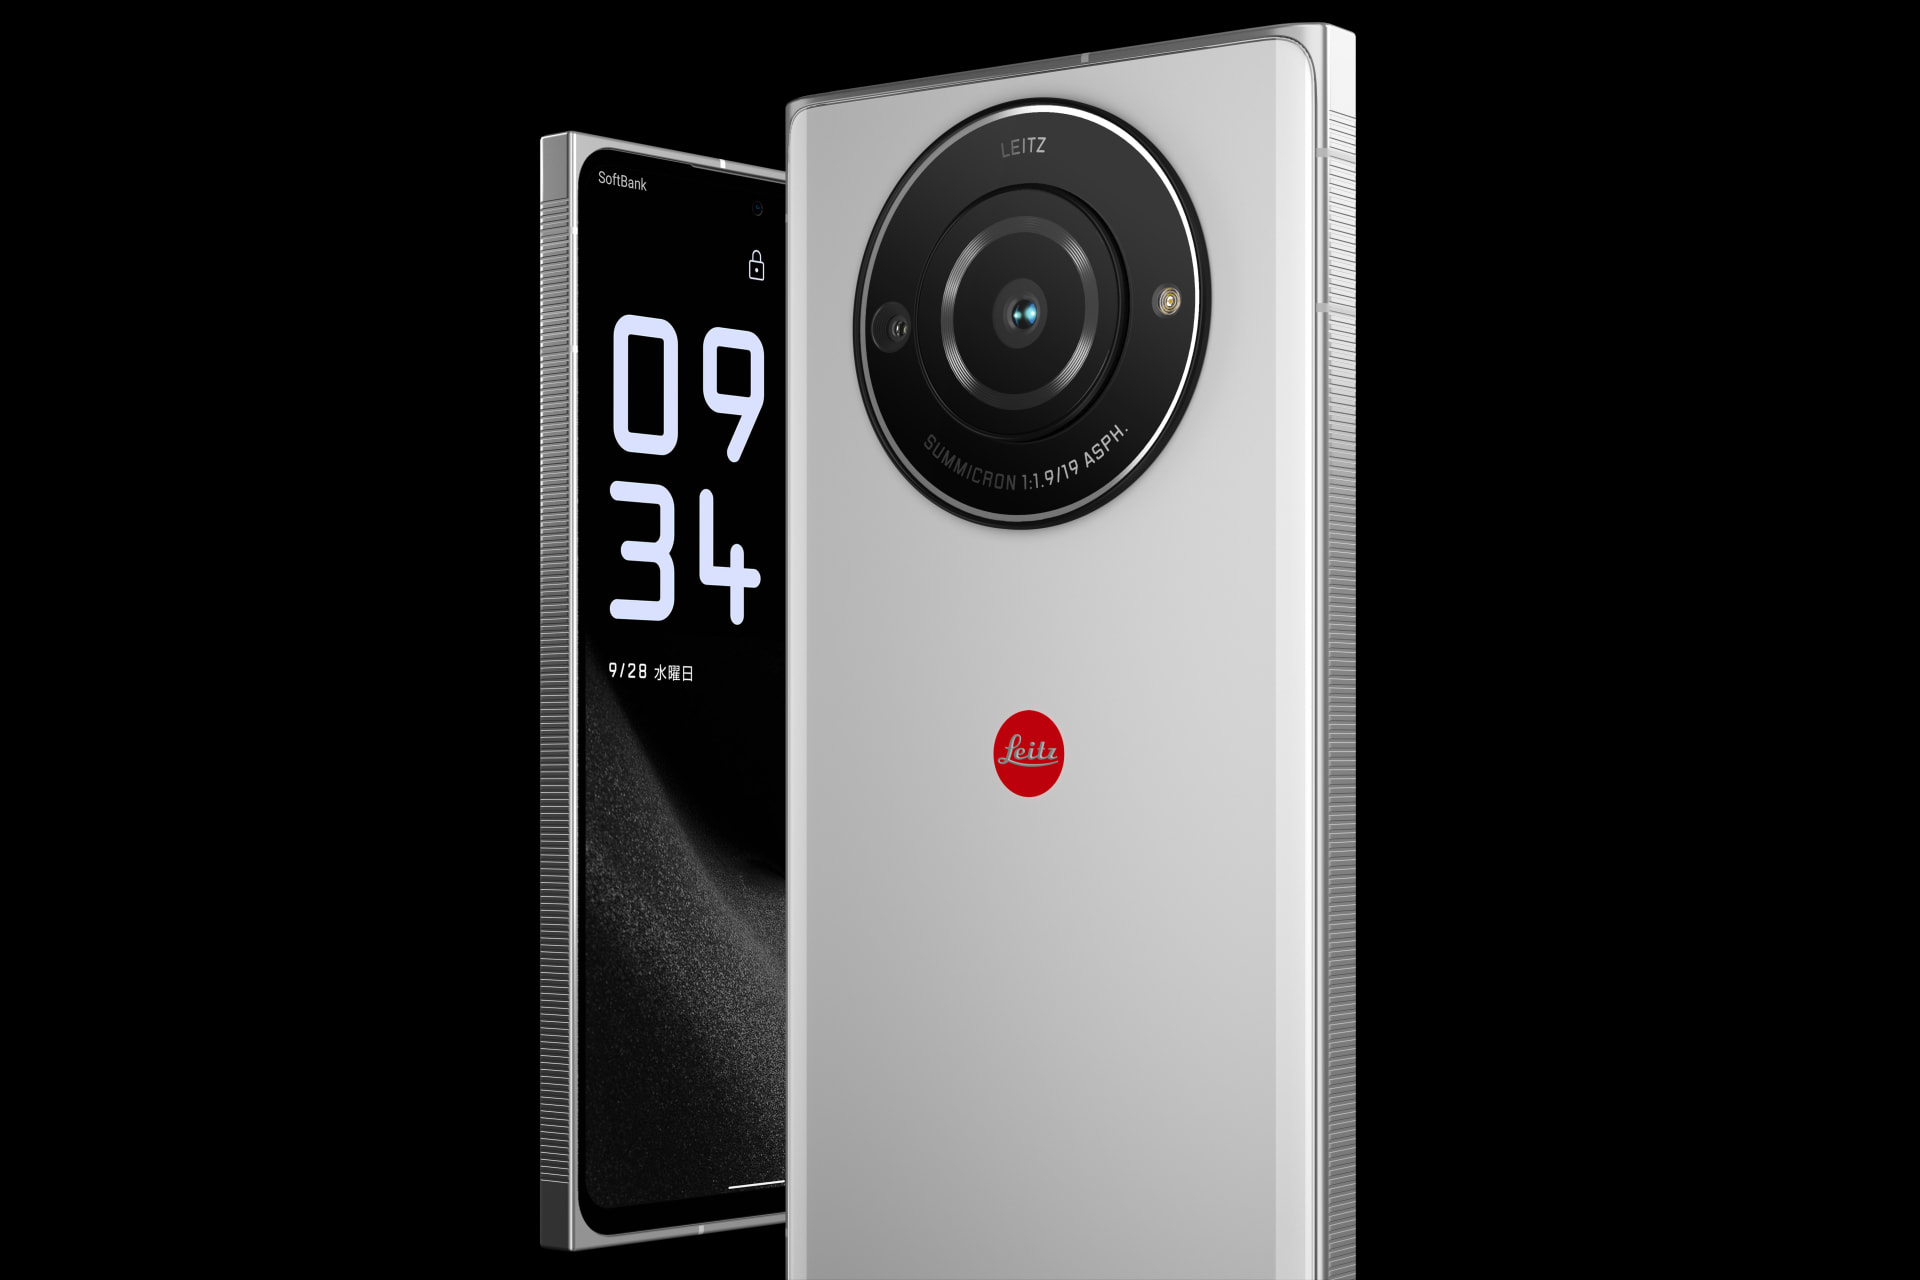 ライカのカメラ体験が手軽に楽しめる スマートフォン「Leitz Phone 2」登場 | Webマガジン「AXIS」 | デザインのWebメディア